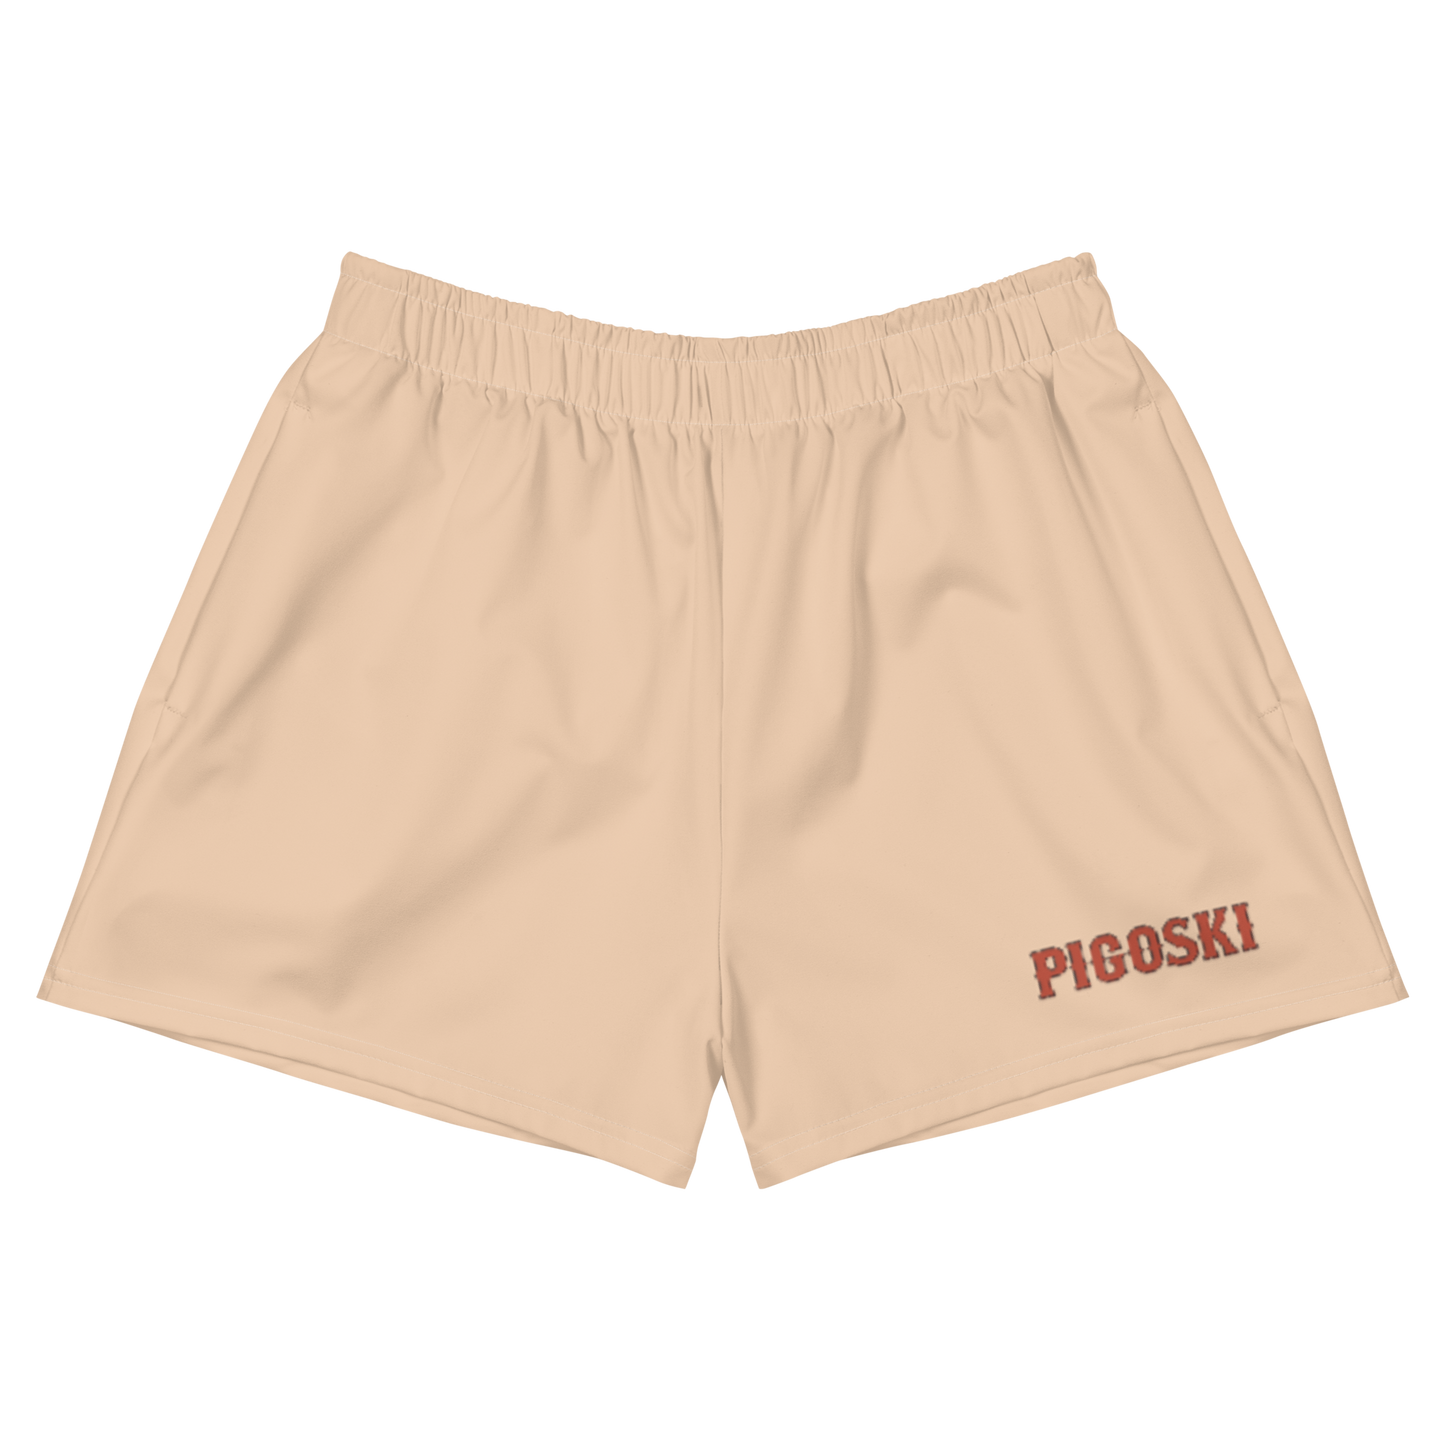 Tan Gerish Athletic Shorts